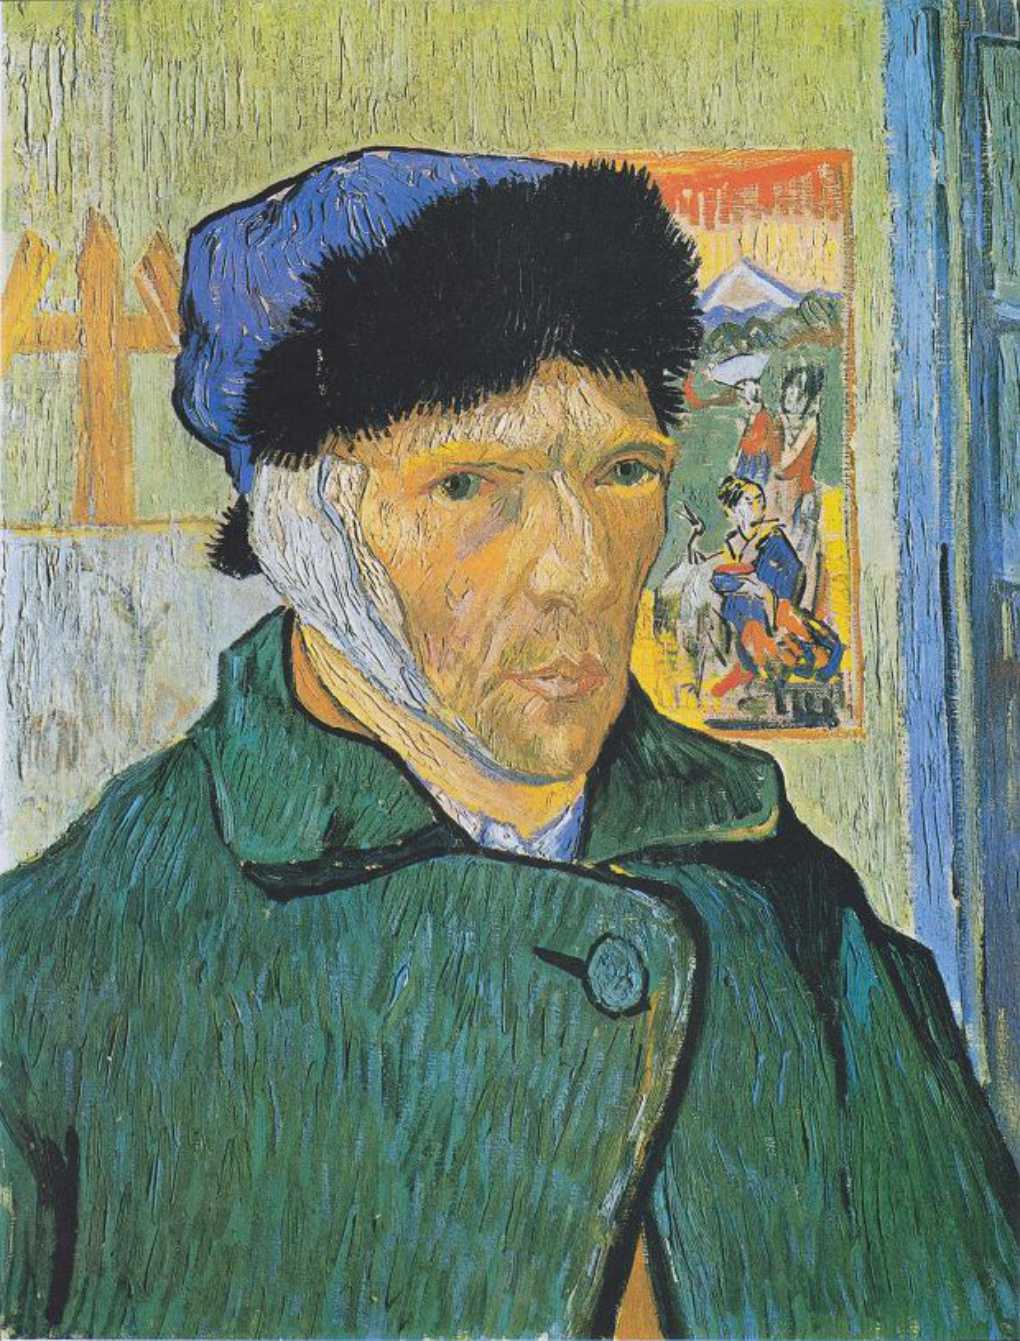 Autoportret z zabandazowanym uchem - obraz van Gogha.